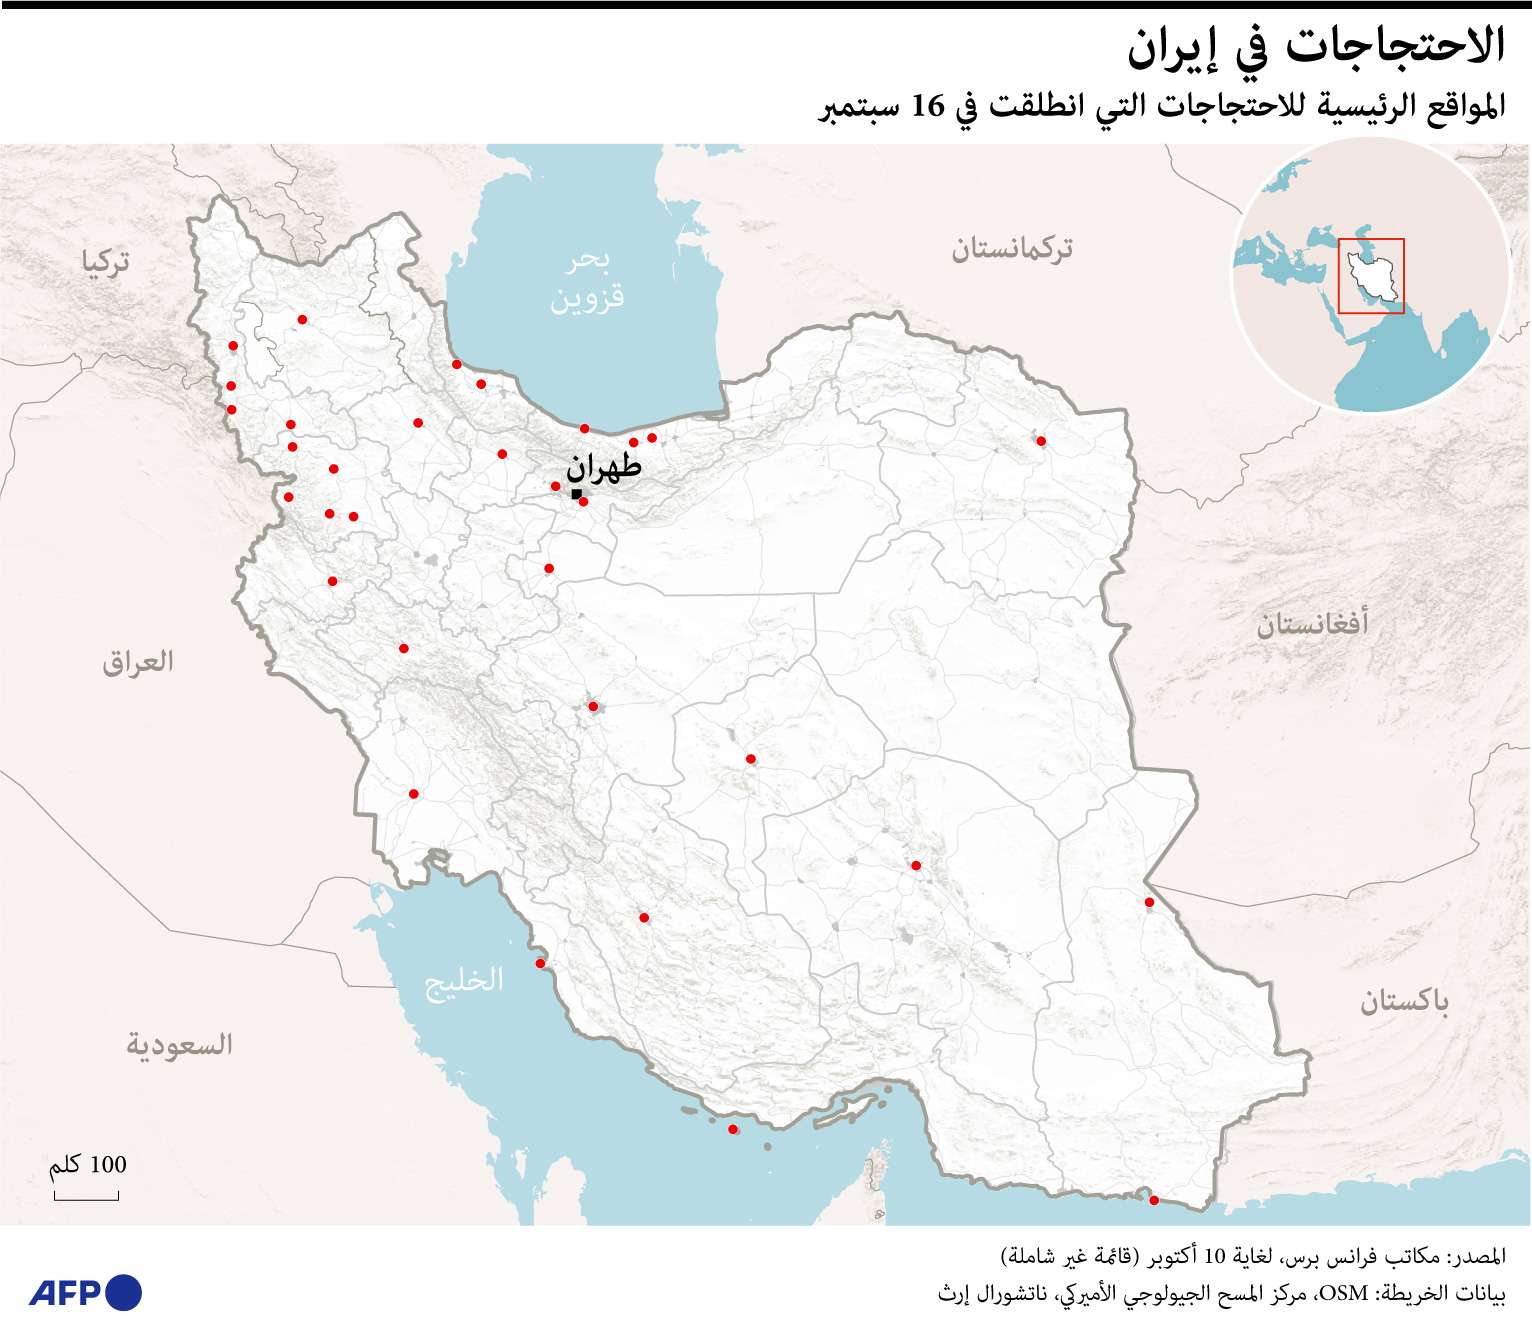 اتساع رقعة الاحتجاجات في إيران منذ مقتل مهسا أميني الشهر الماضي